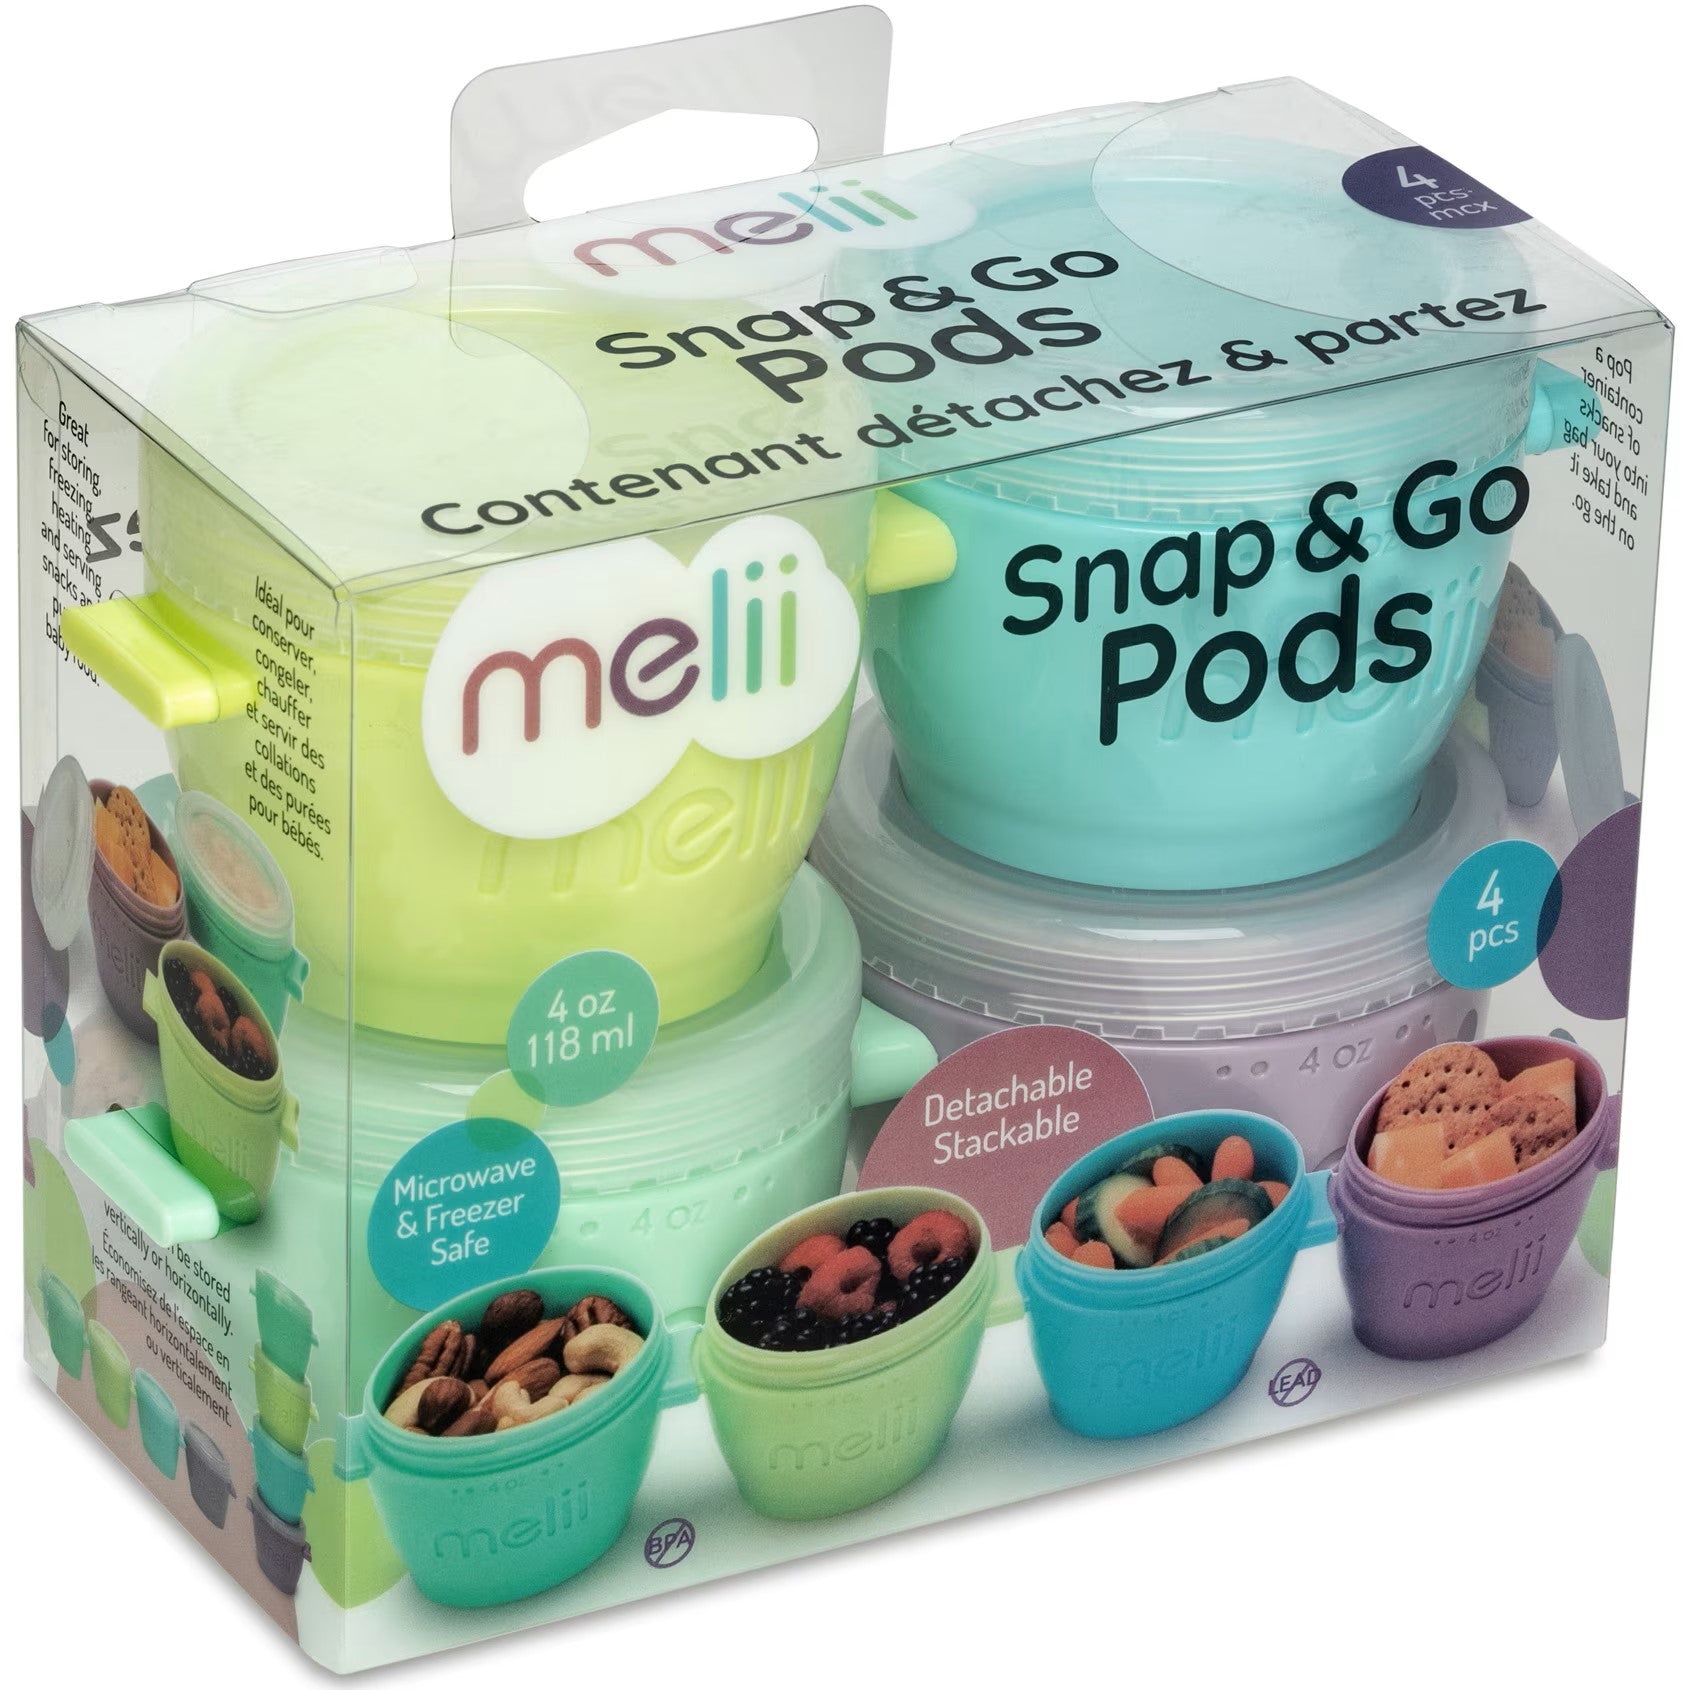 Melii Silicone Snap & Go Pods (4oz)- 4 piece set Multicolor